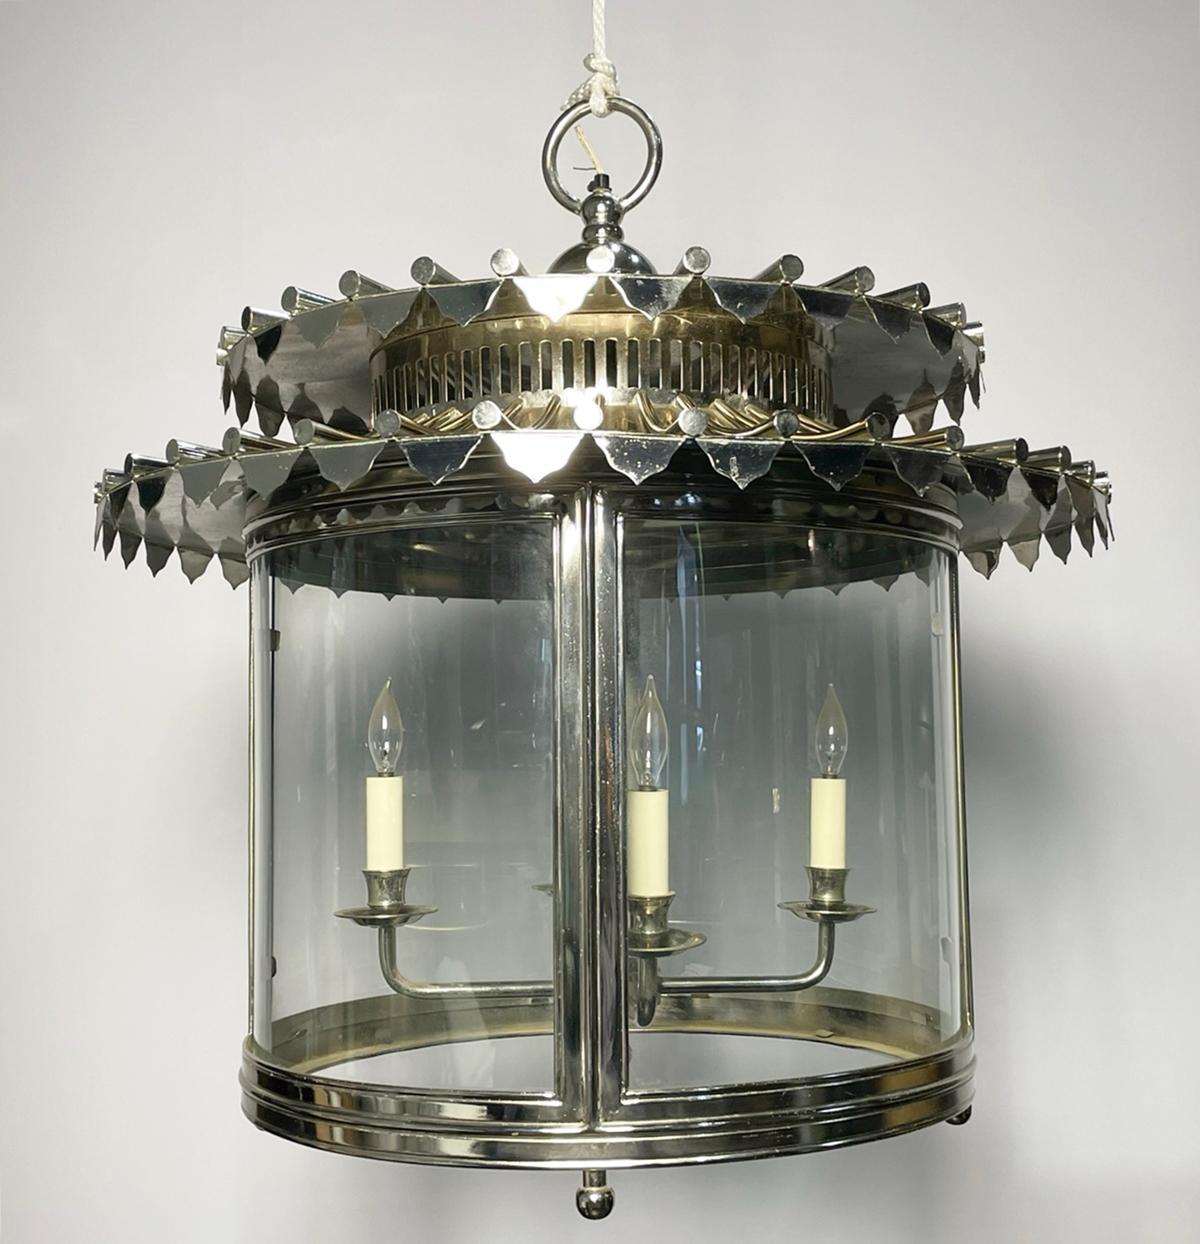 Der exquisite Nickel & Glass Chandelier wurde in England von dem renommierten Designer Charles Edwards entworfen.

 Diese atemberaubende Leuchte besticht durch ihr raffiniertes und elegantes Design, bei dem vier Kerzen von der Spitze herabhängen.
